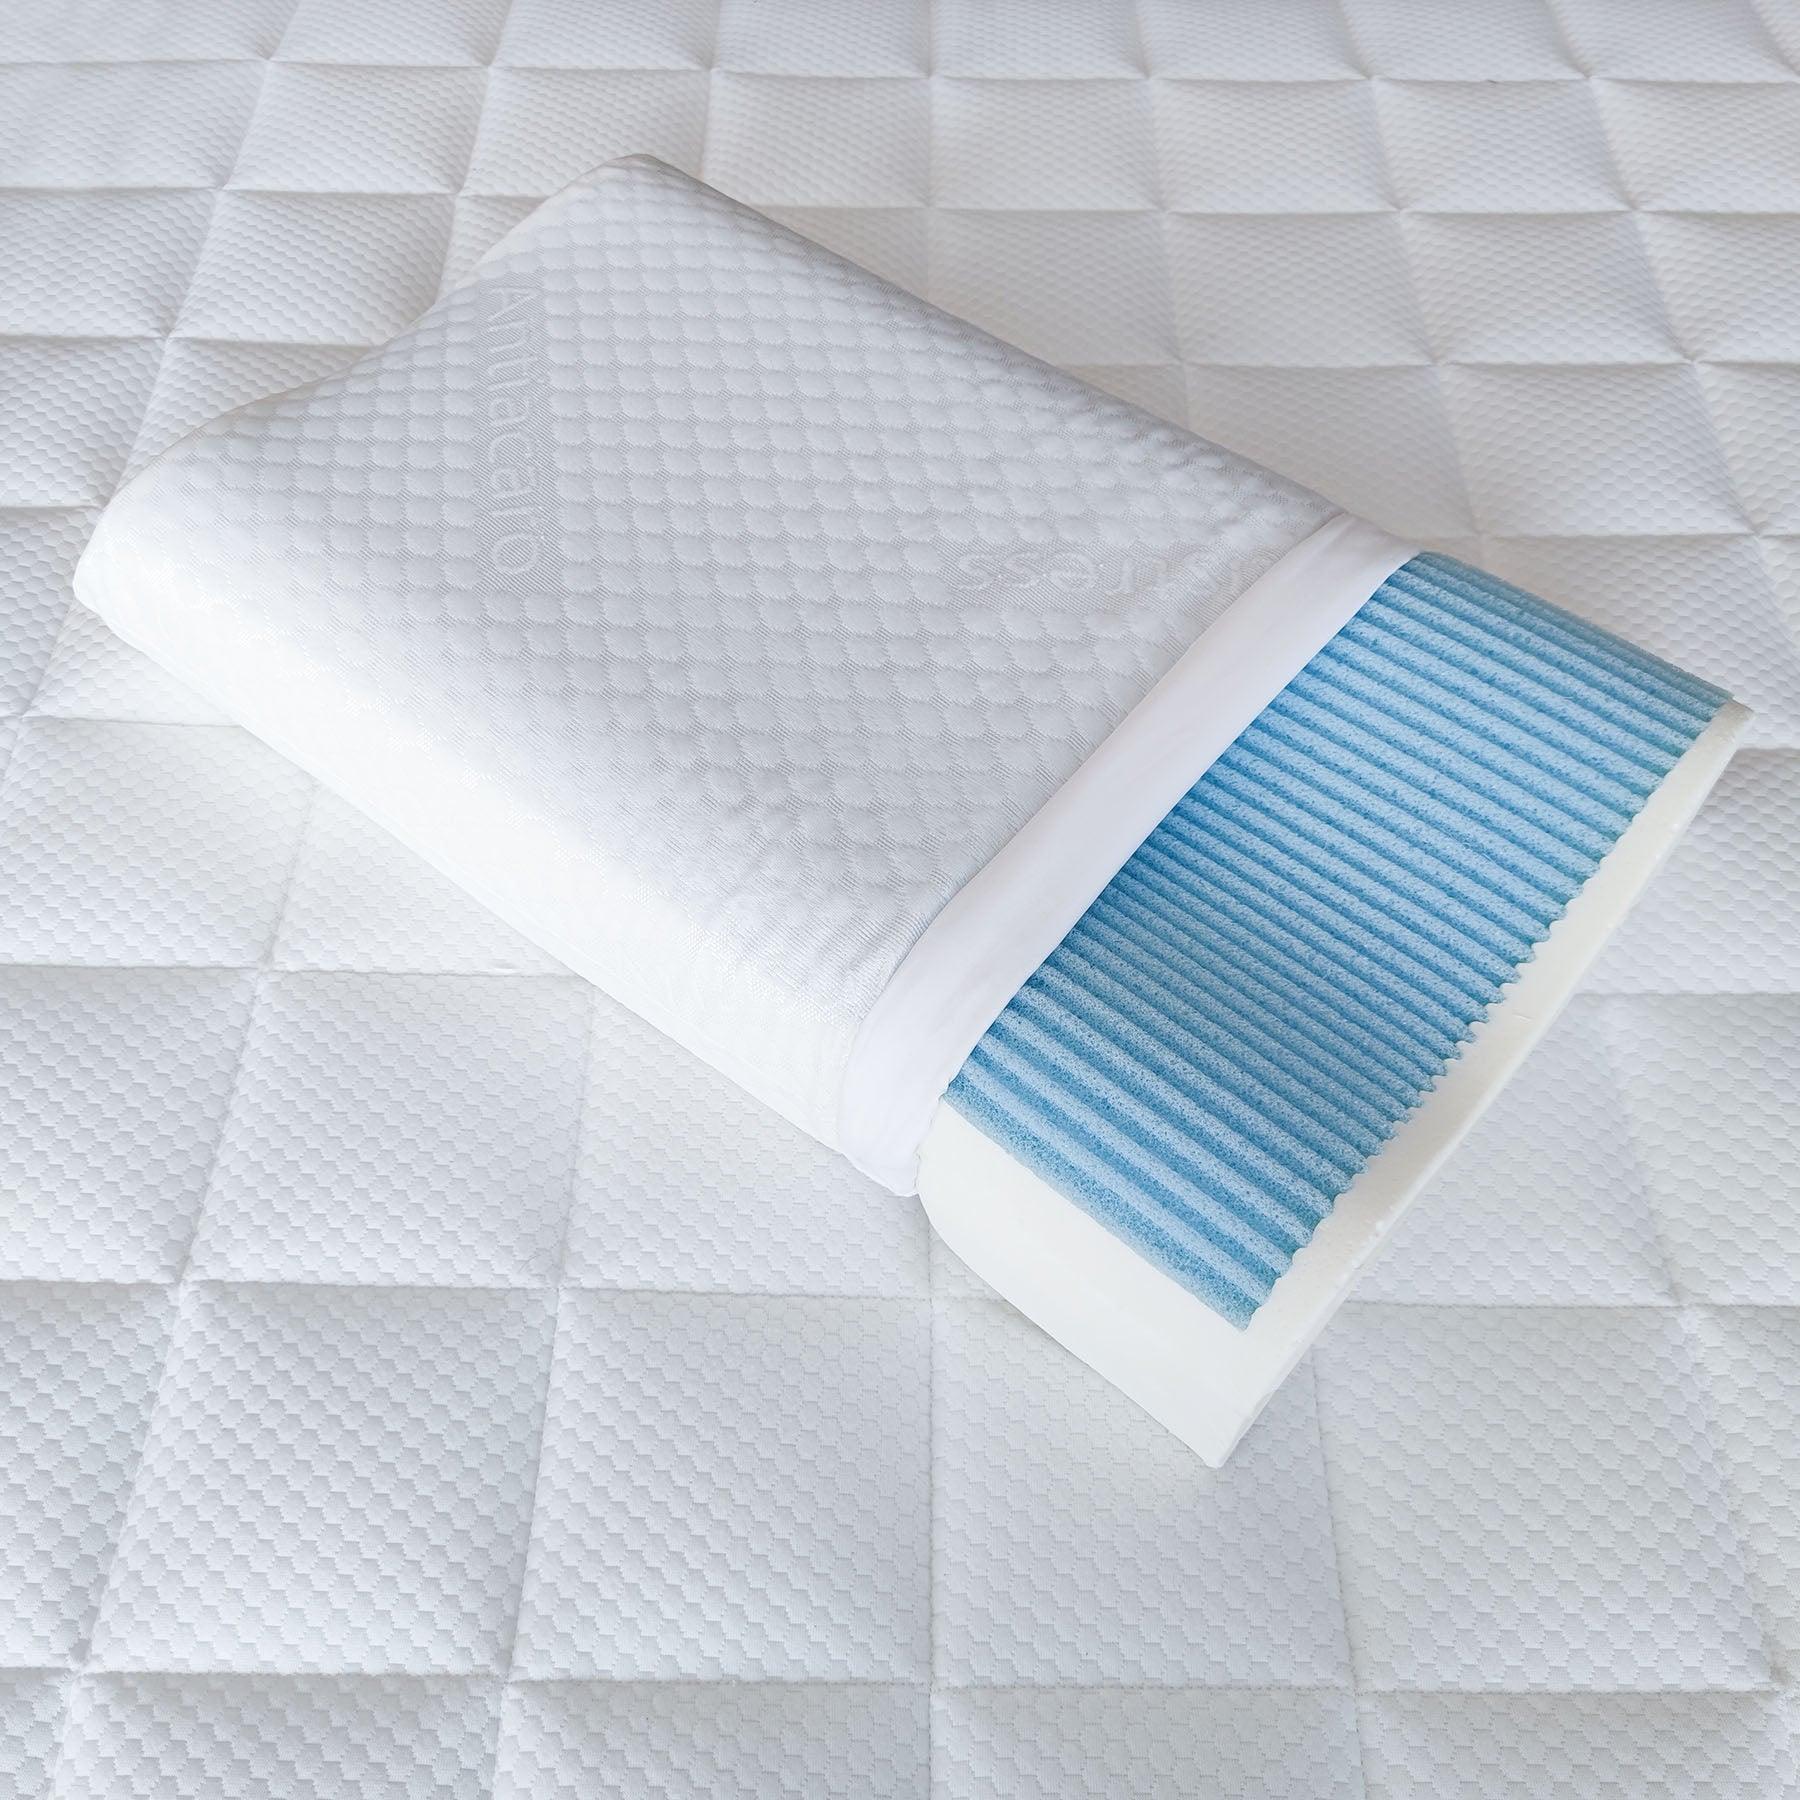 Dettaglio del cuscino Lignano in memory foam e water gel di Beliamo, che mostra la struttura traspirante e confortevole